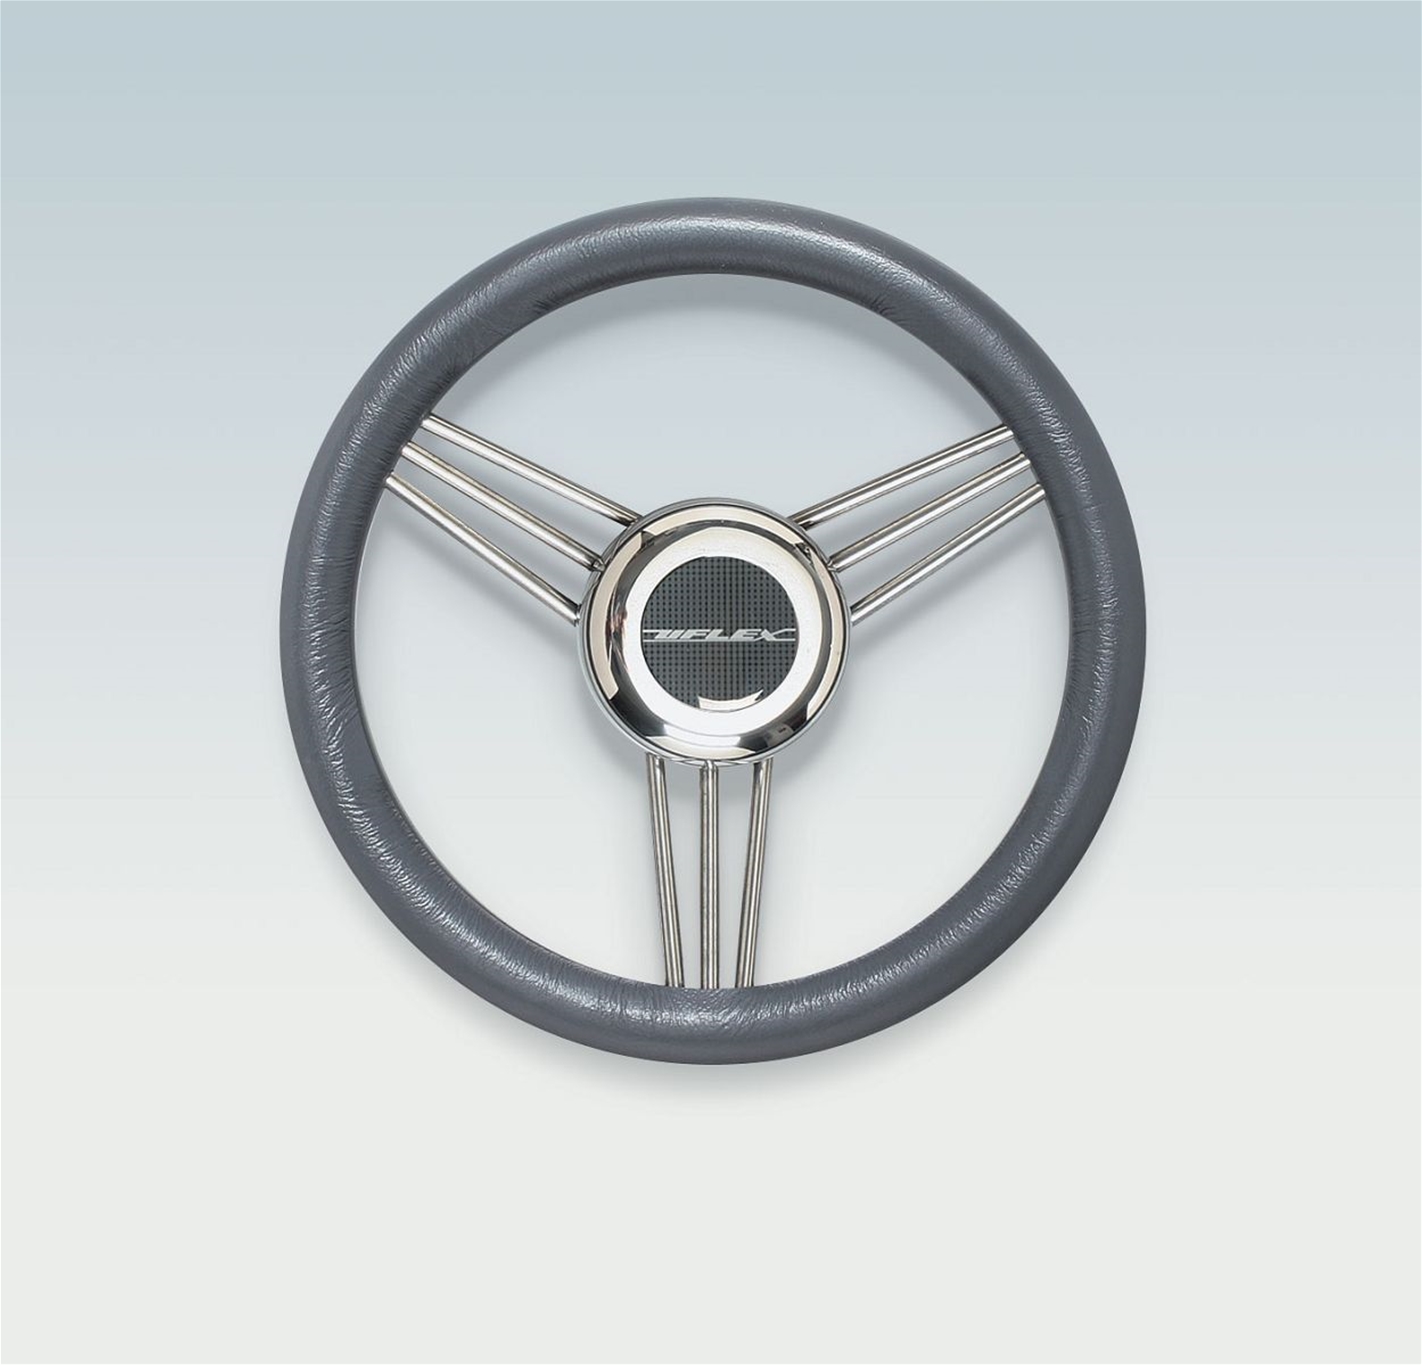 V25G 40641 T Soft Grip Steering Wheel 13.2"